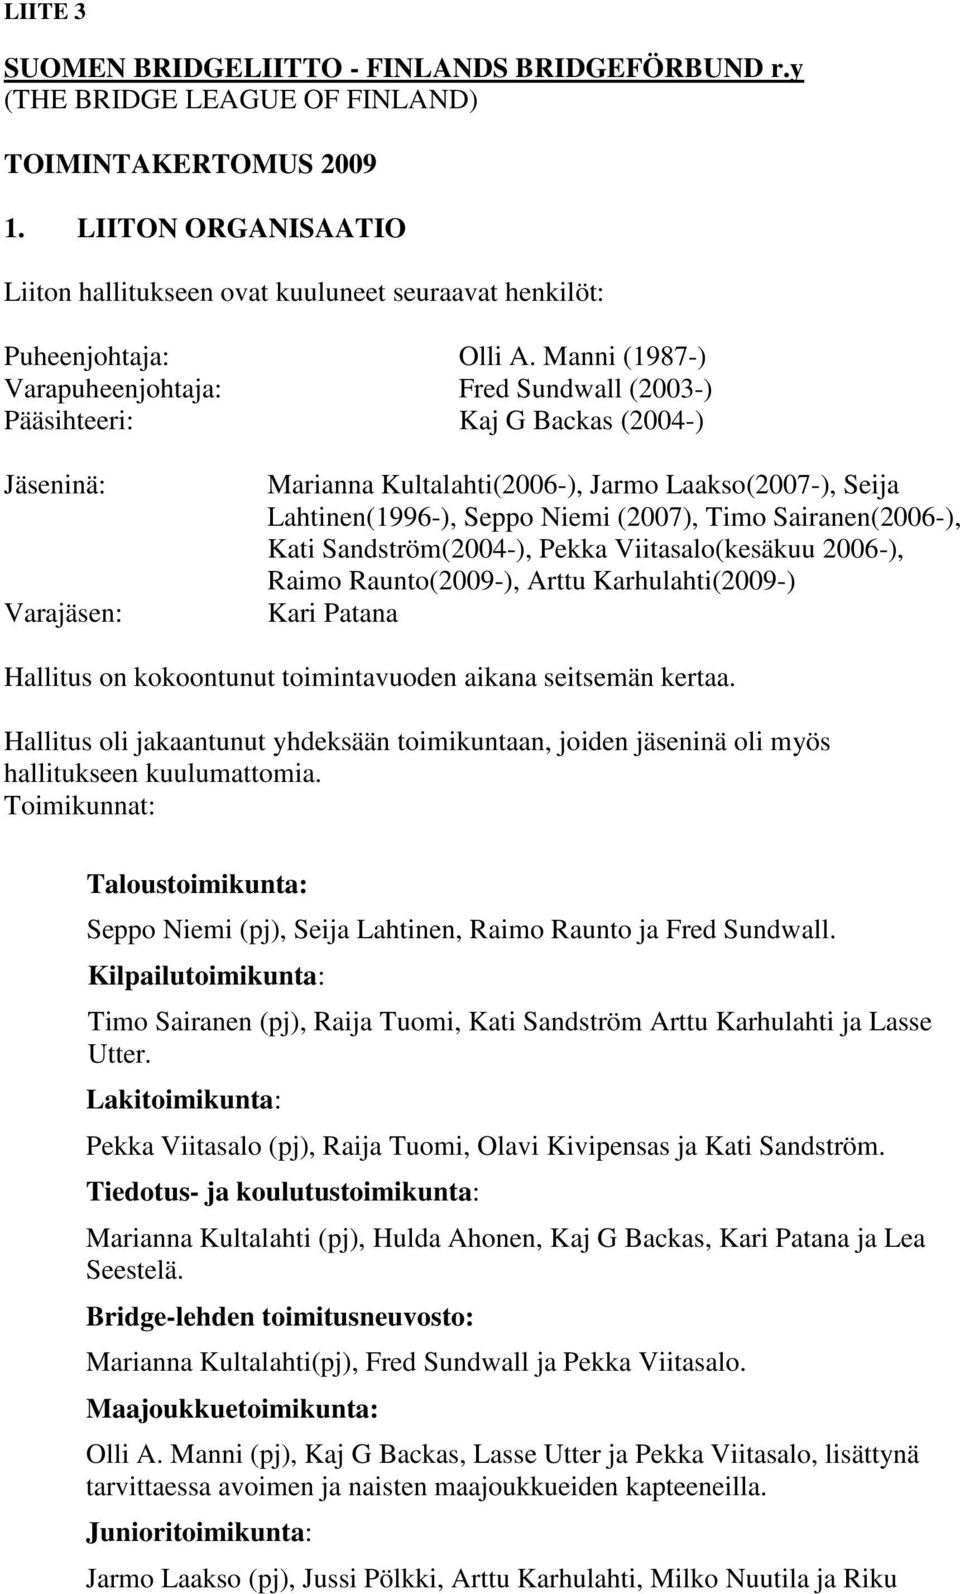 Manni (1987-) Varapuheenjohtaja: Fred Sundwall (2003-) Pääsihteeri: Kaj G Backas (2004-) Jäseninä: Varajäsen: Marianna Kultalahti(2006-), Jarmo Laakso(2007-), Seija Lahtinen(1996-), Seppo Niemi